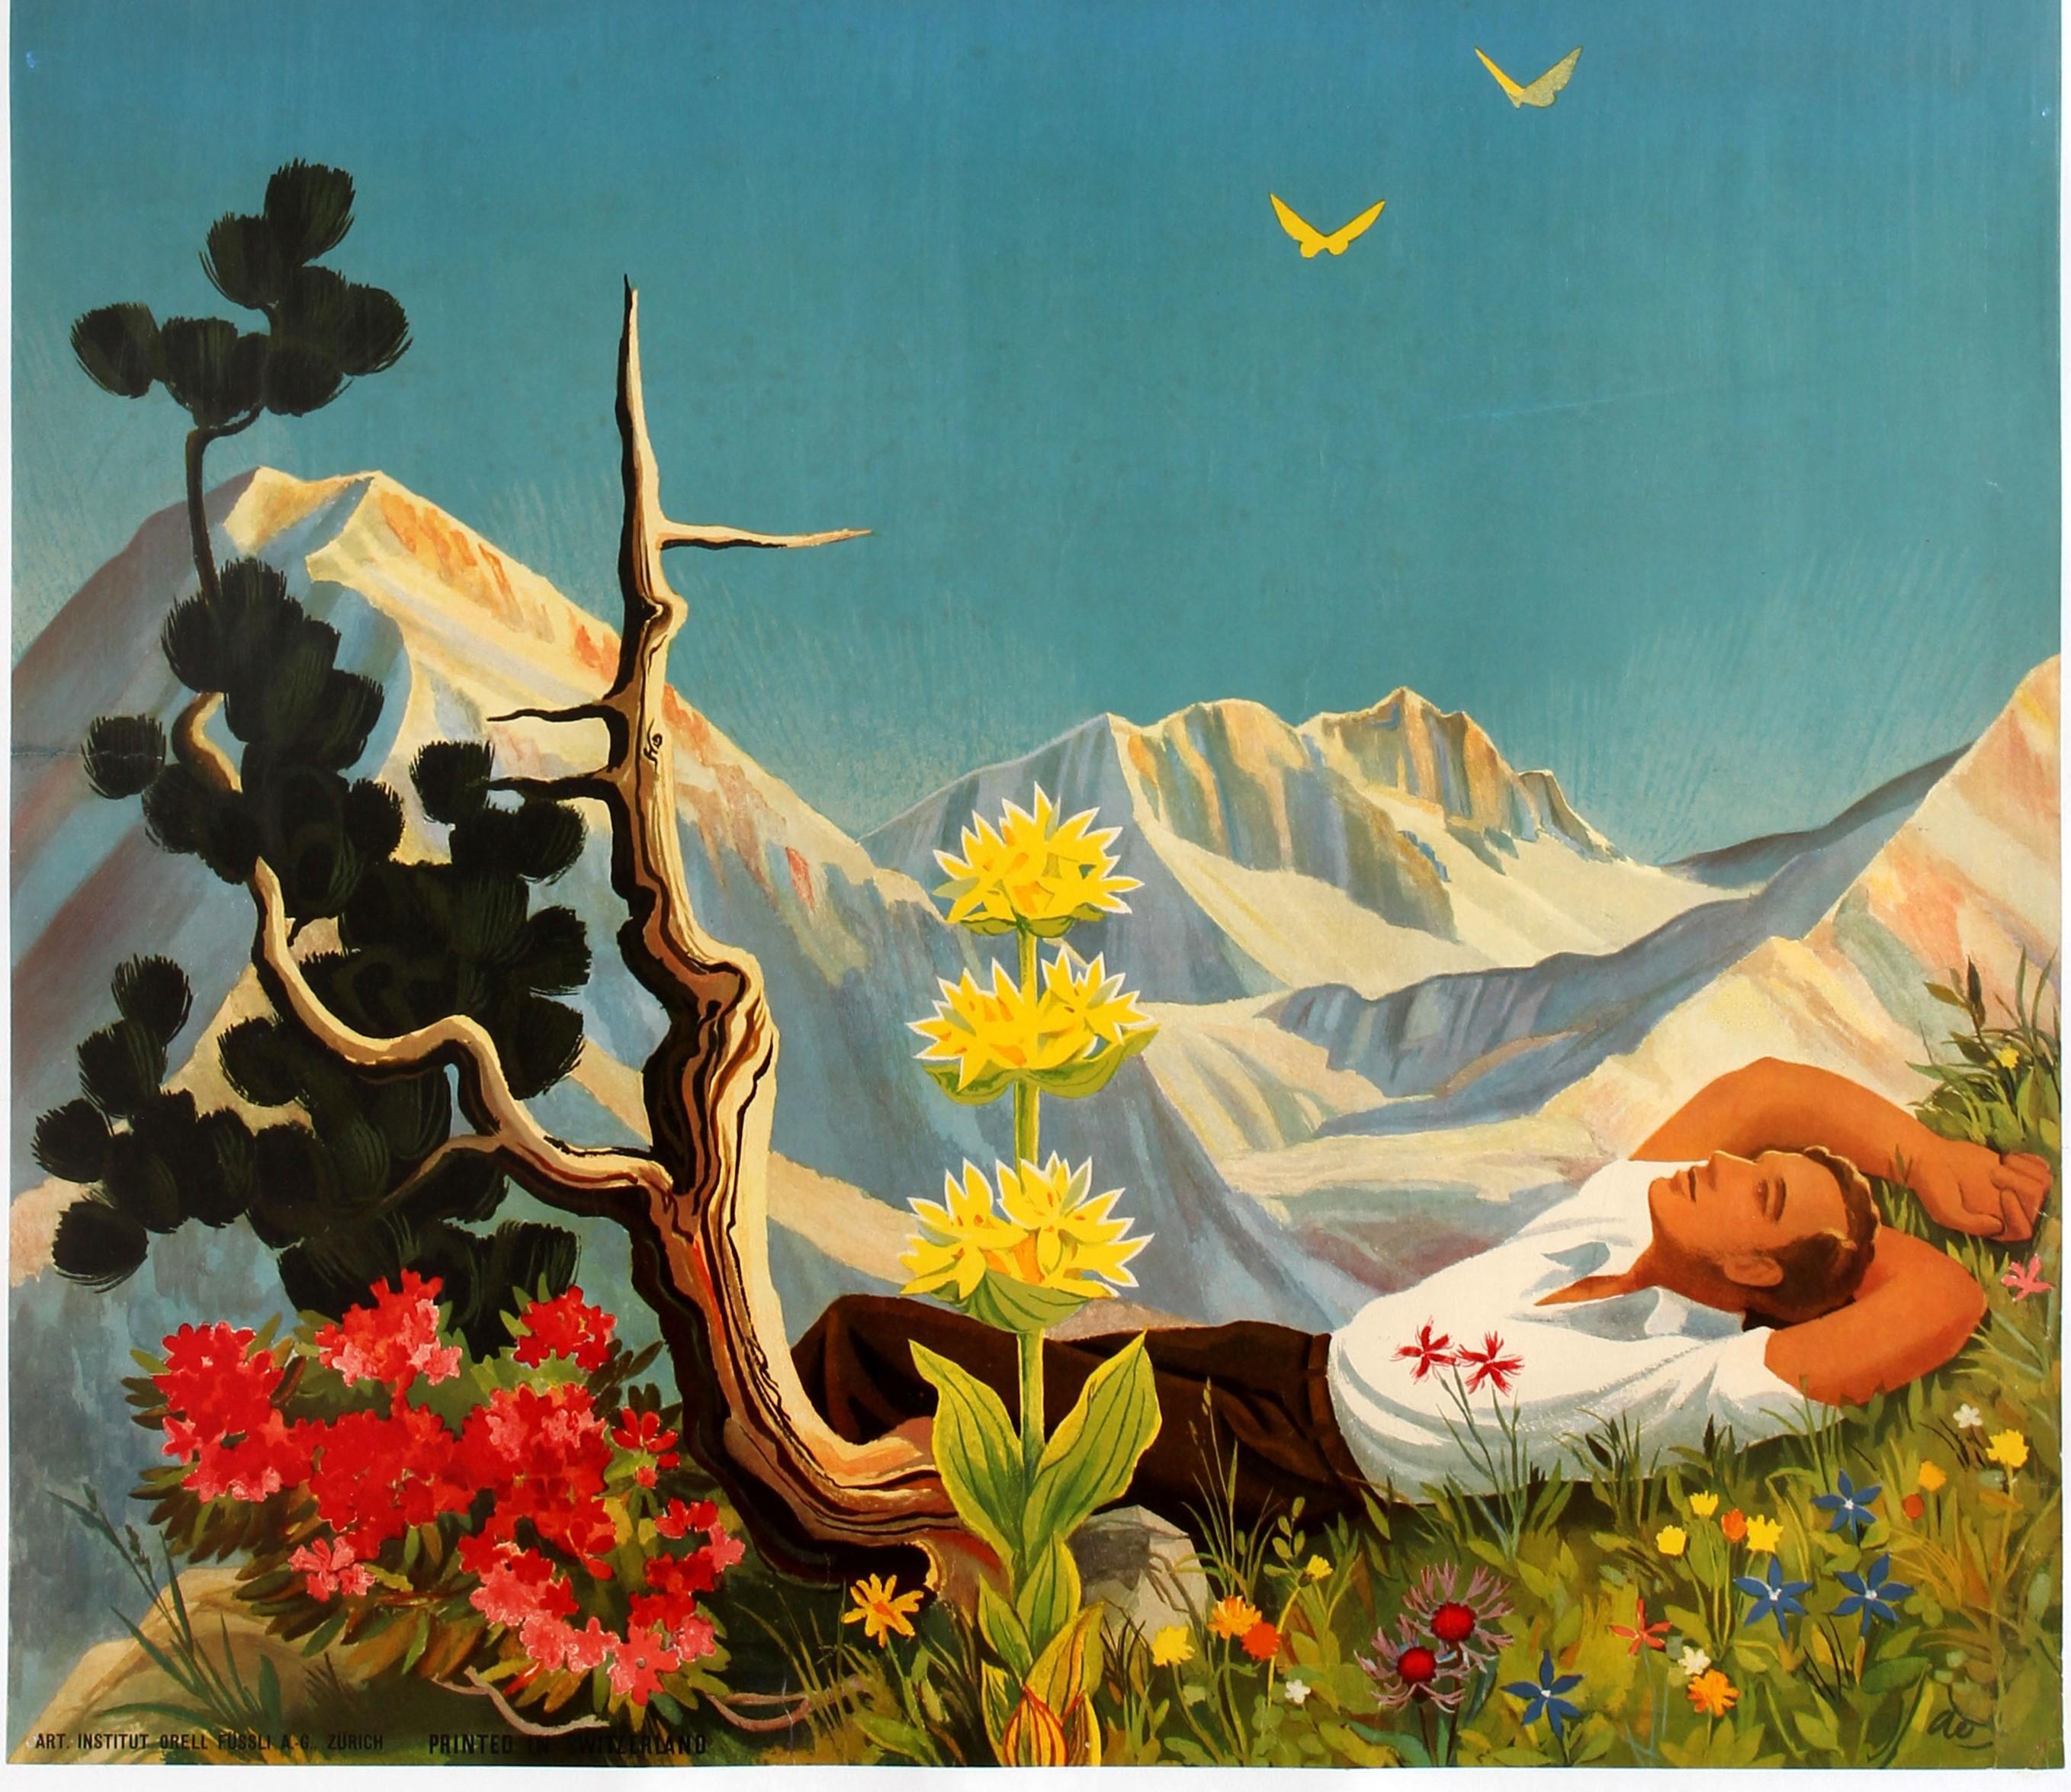 Affiche de voyage originale pour Arosa dans les Alpes suisses, avec une illustration colorée de Hans Aeschbach (1911-1999) représentant un randonneur allongé sur l'herbe sous un ciel bleu vif avec un arbre et des fleurs au premier plan, deux oiseaux